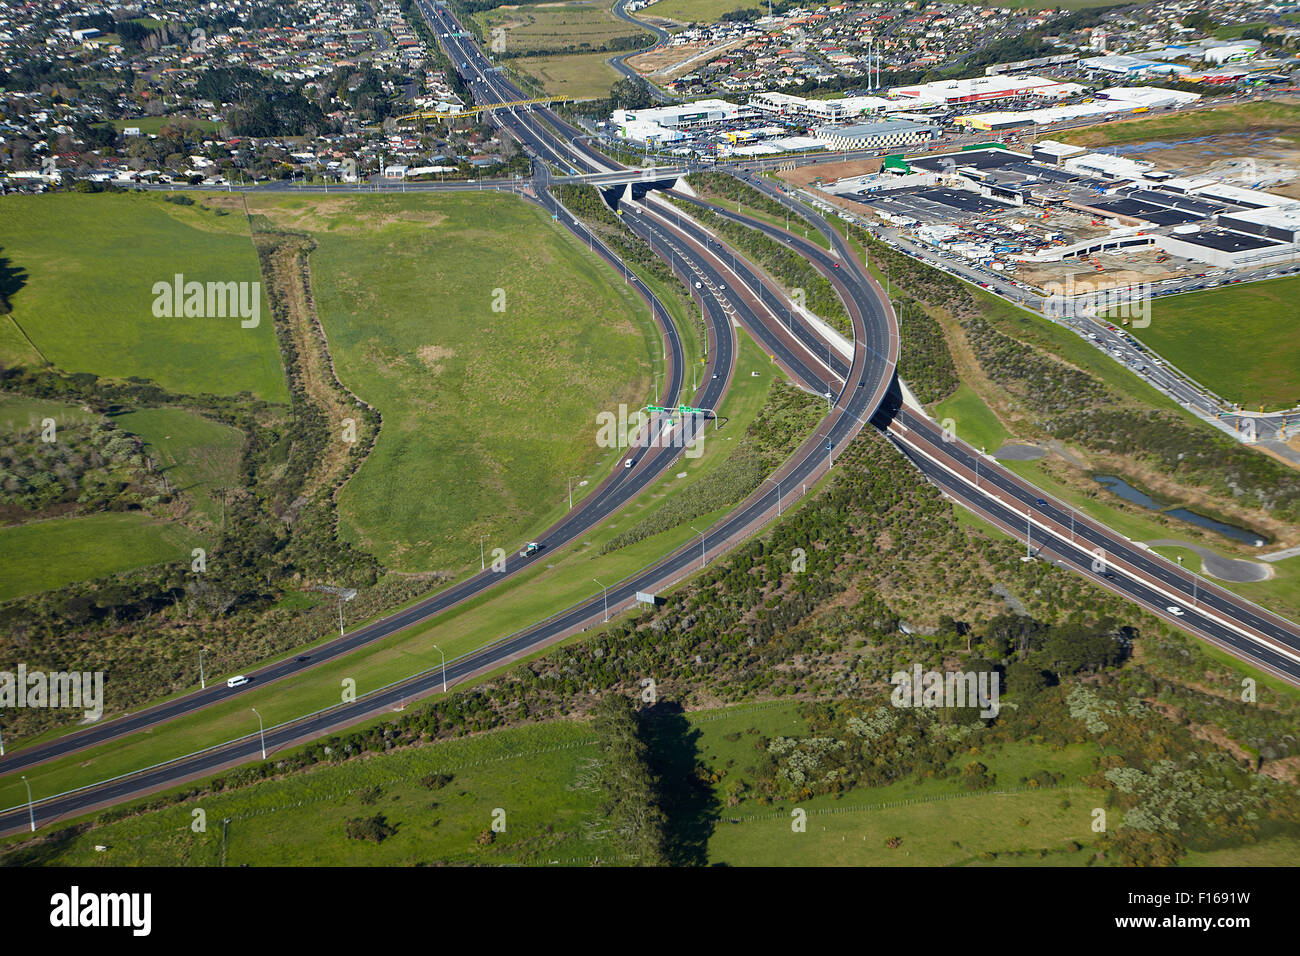 Le port supérieur, autoroute et centre commercial Westgate, Massey, Auckland, île du Nord, Nouvelle-Zélande - vue aérienne Banque D'Images